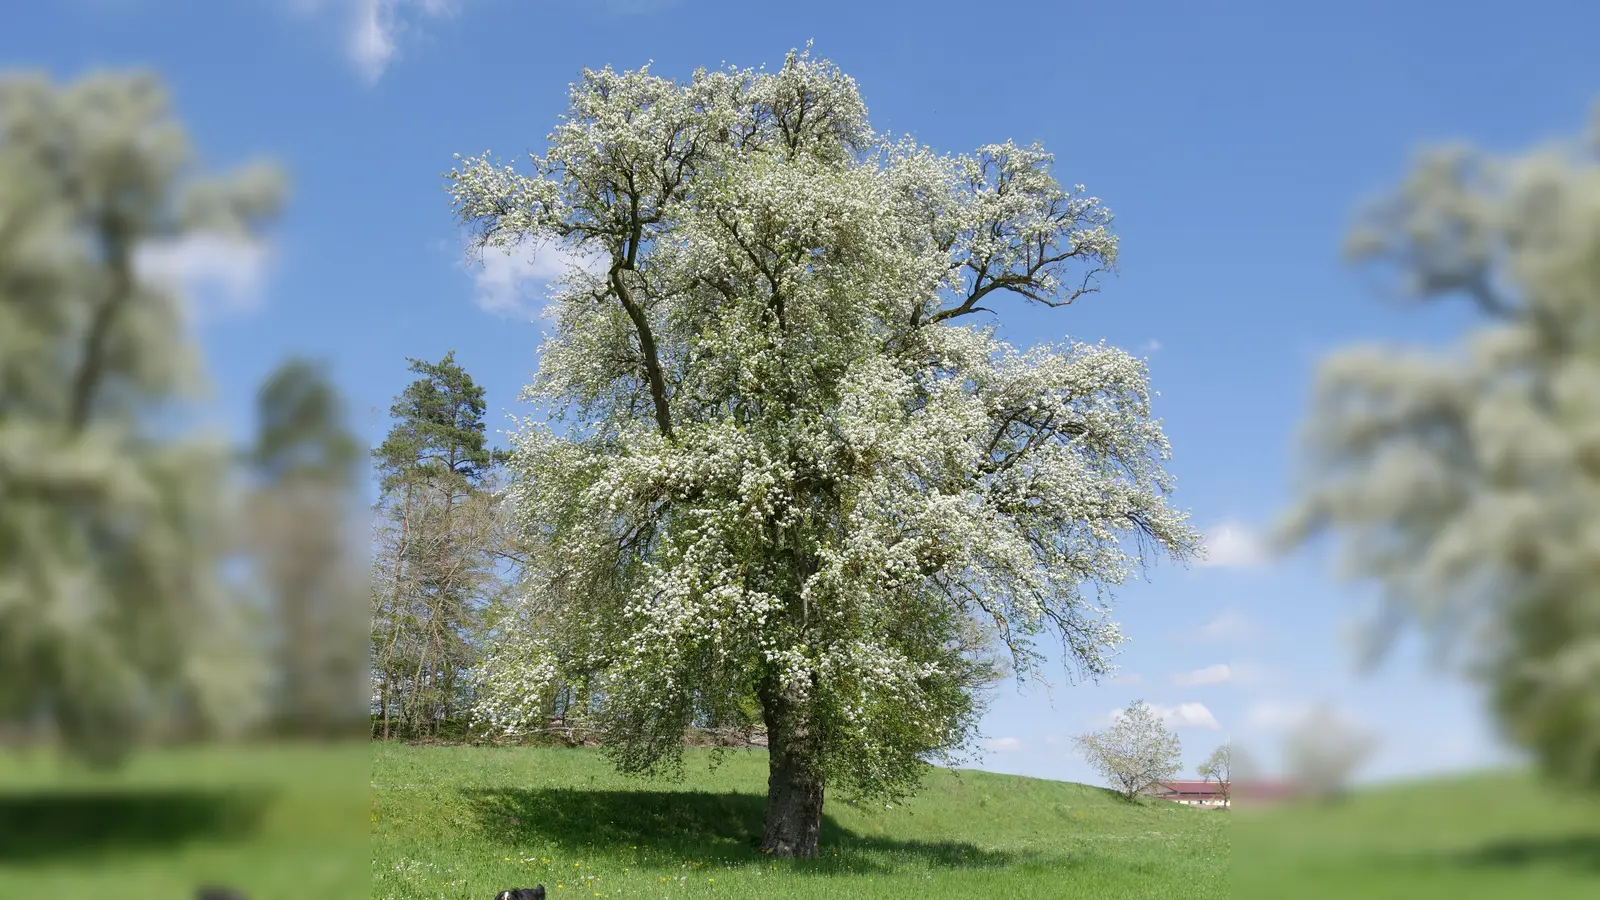 Bei Klausaurach steht dieser imposante Birnbaum. Ob es sich, wie die Tafel am Baum behauptet, um den größten in Franken handelt, ist nicht gesichert. Aber der größte in Mittelfranken ist er wohl auf alle Fälle. (Foto: Ulli Ganter)